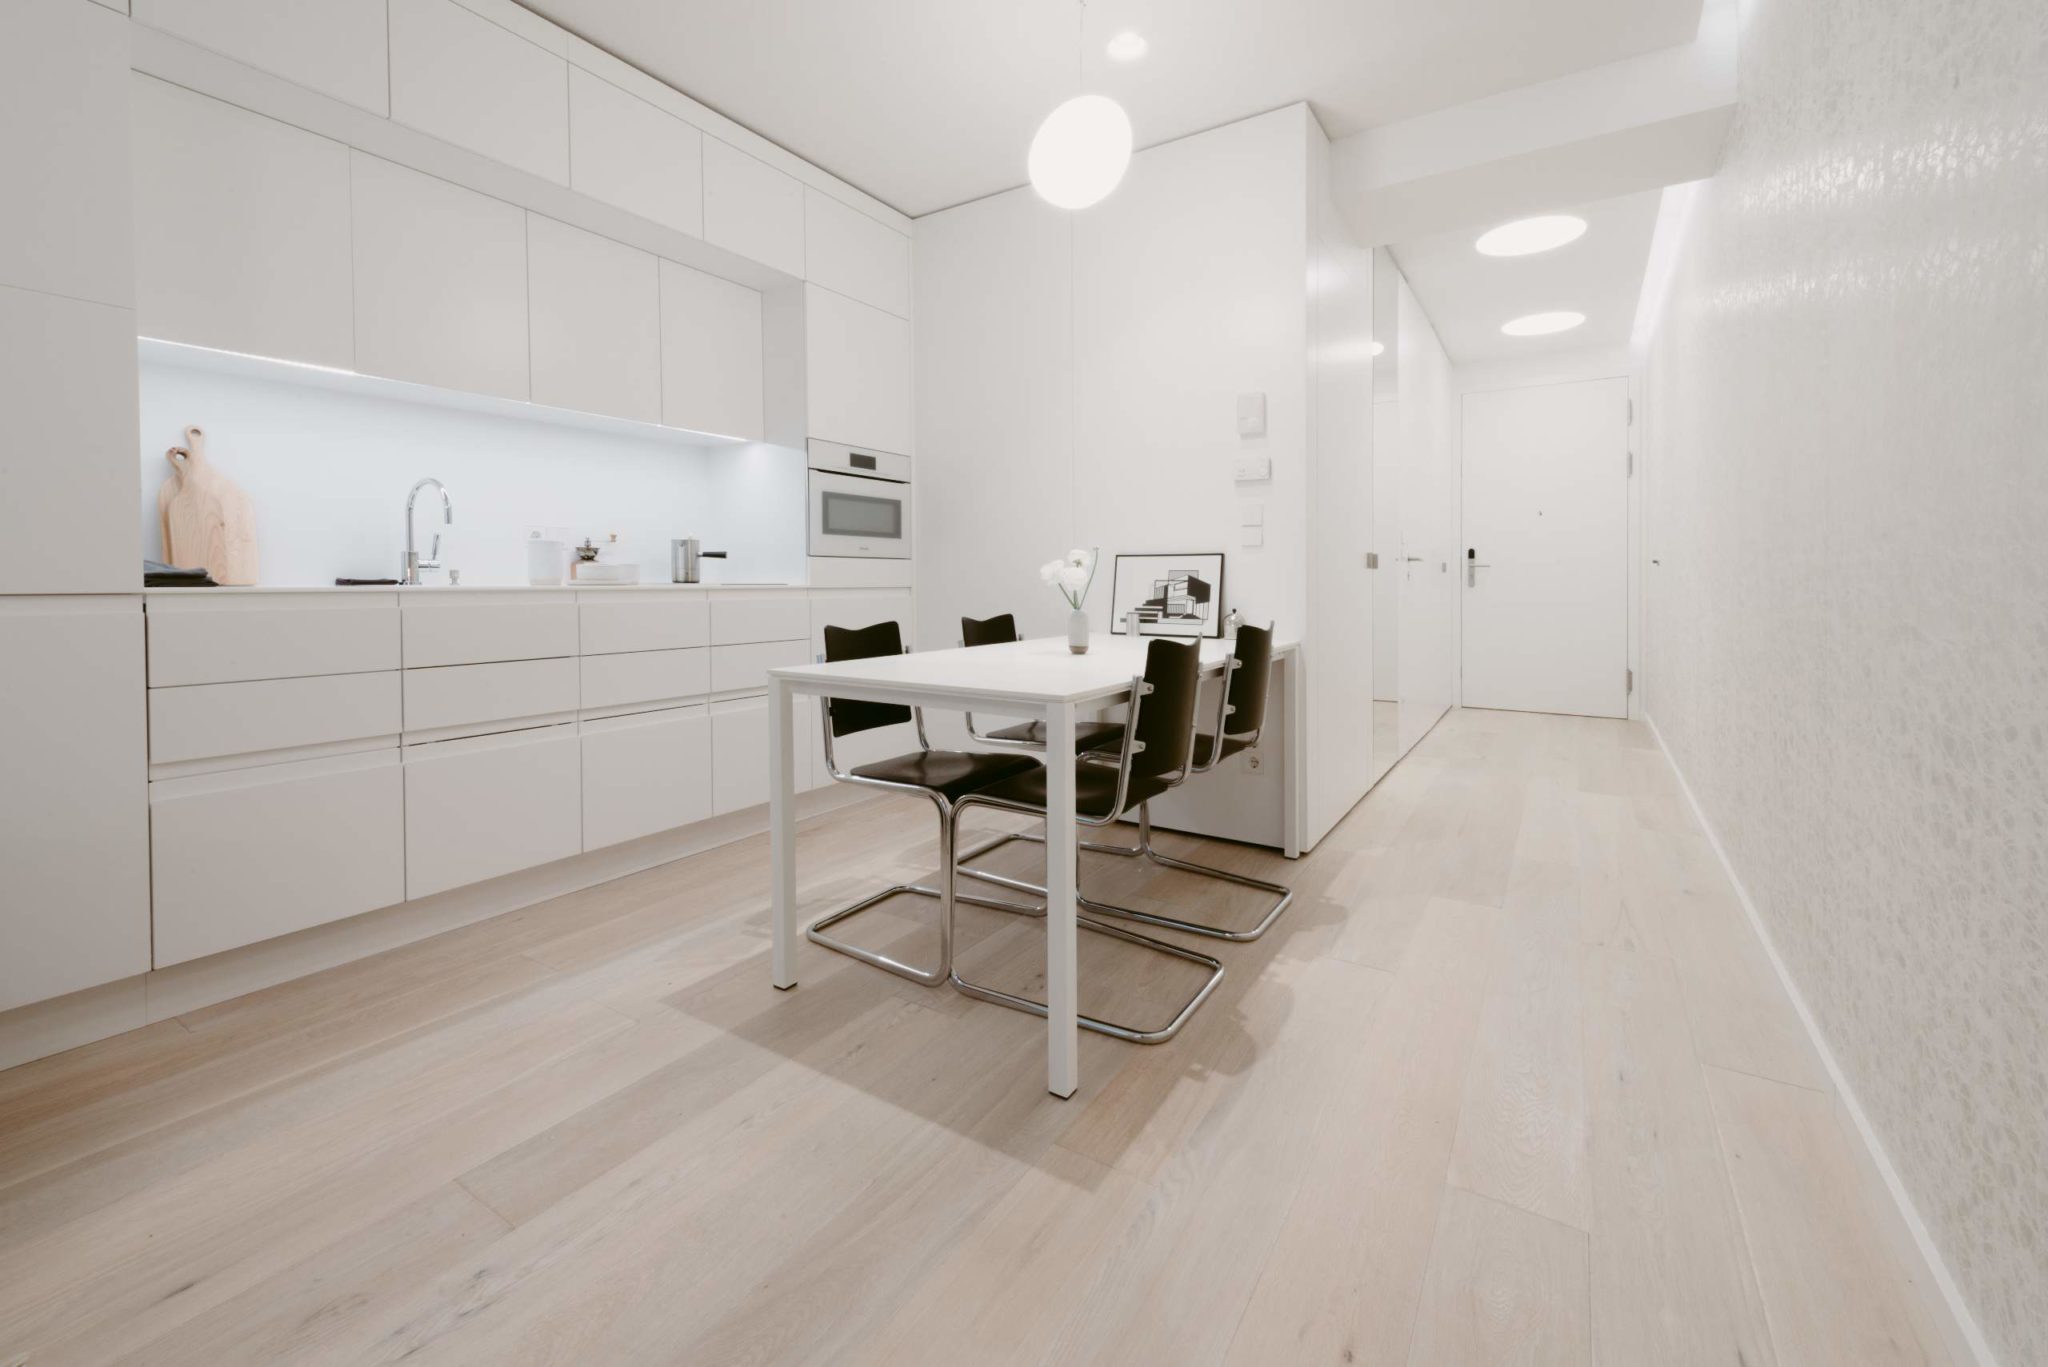 Eine elegante, moderne Küche mit weißen Schränken und einem Esstisch vor einem minimalistischen Innendesign, ideal für Wiens Mikroapartments.